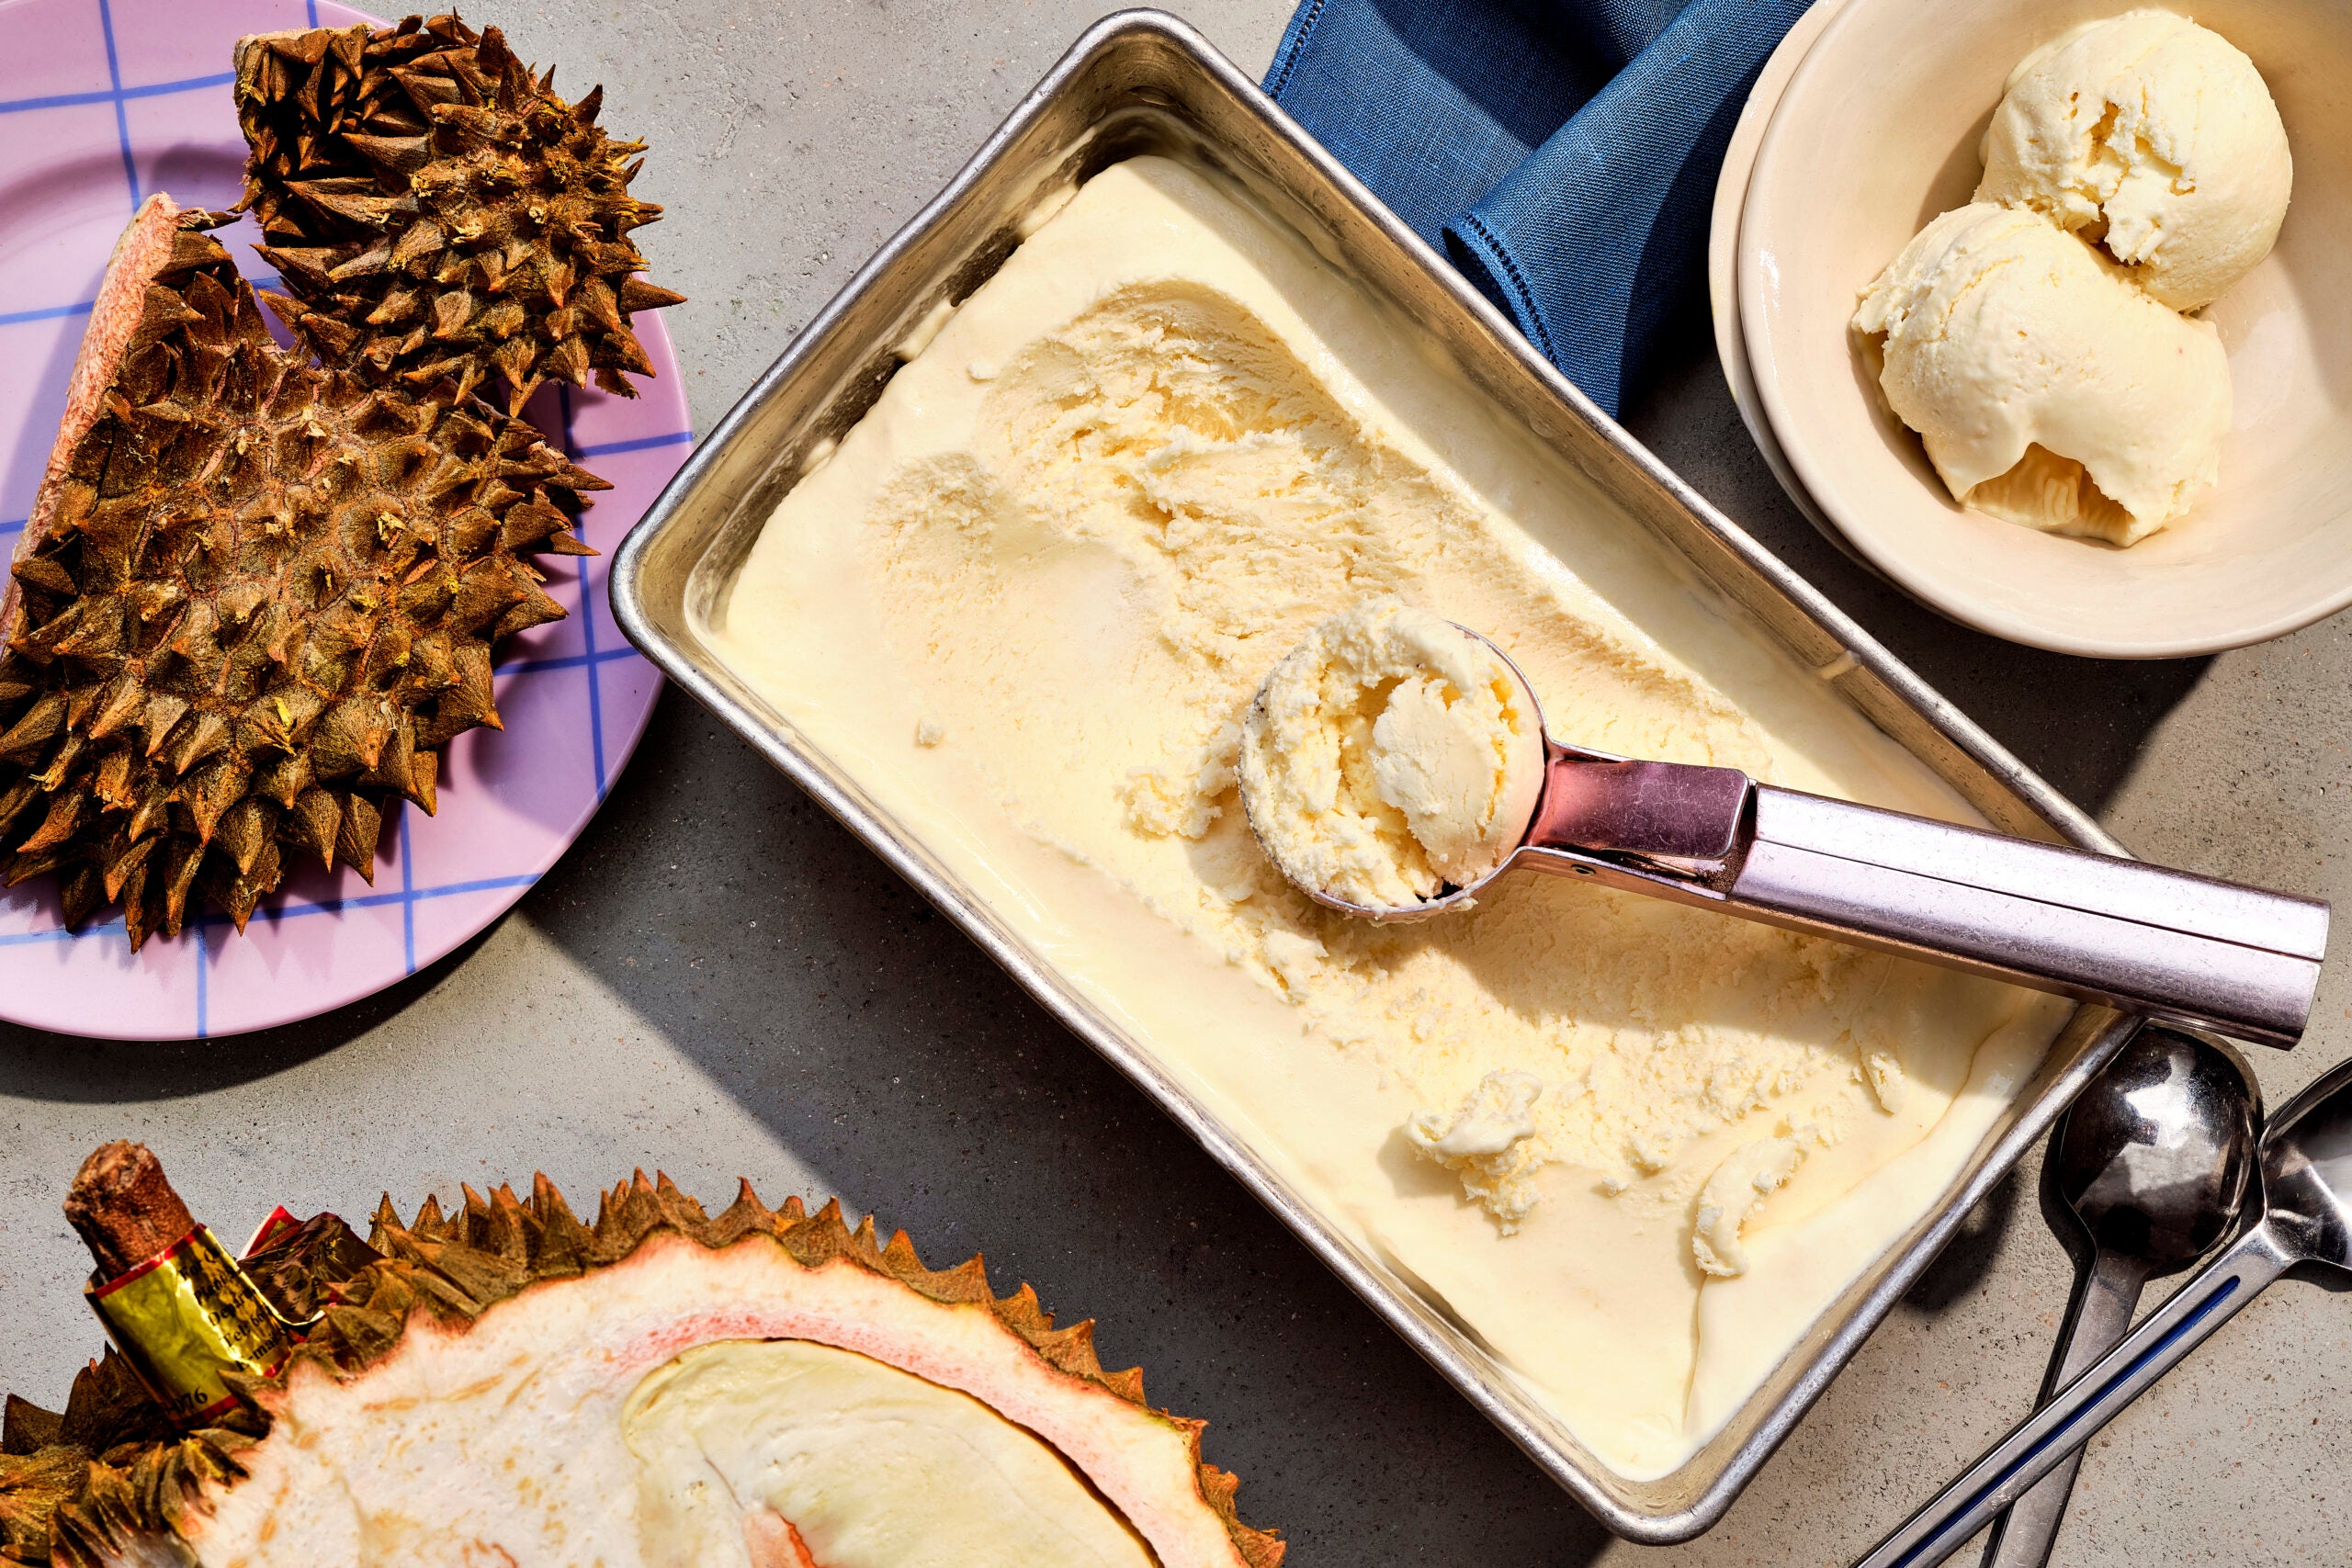 Recipe for durian ice cream